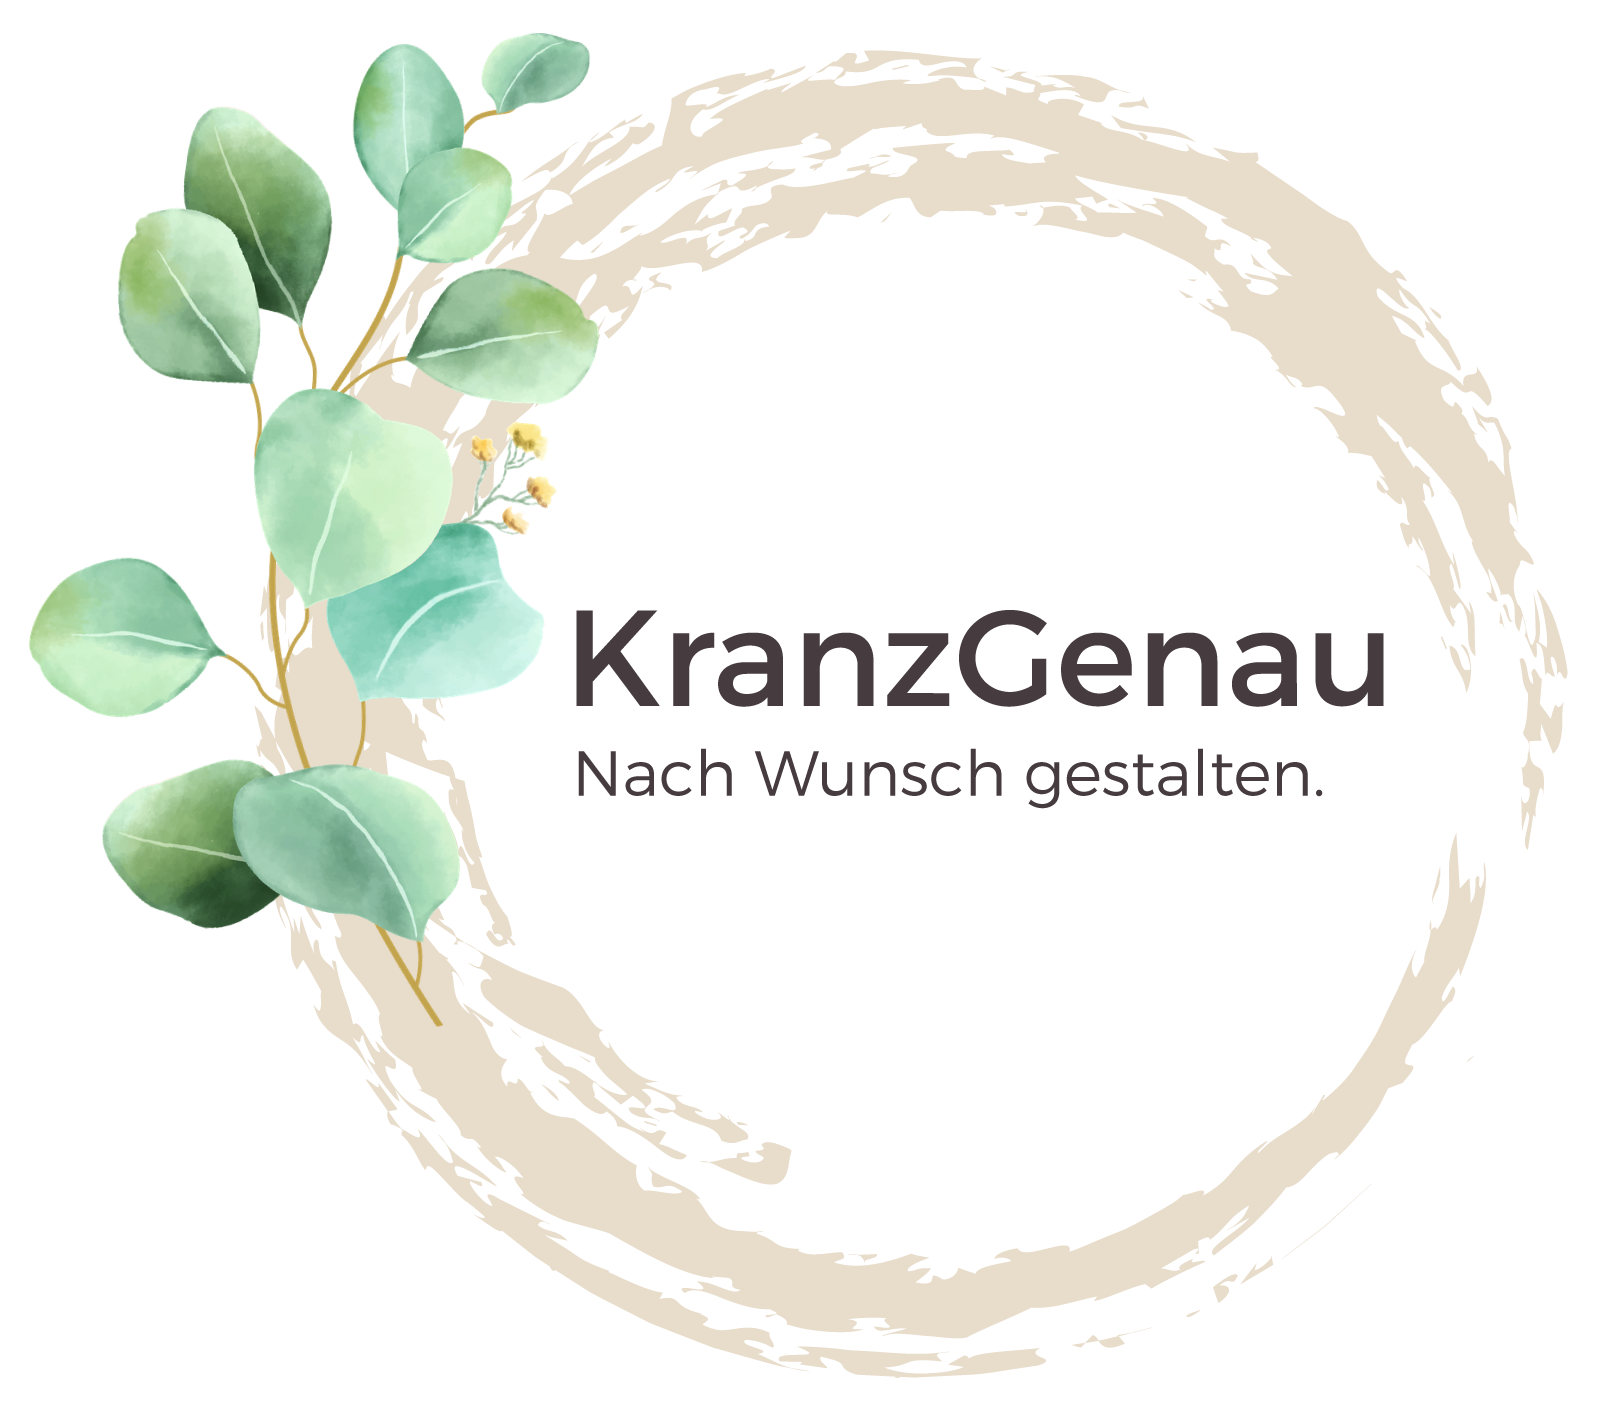 KranzGenau